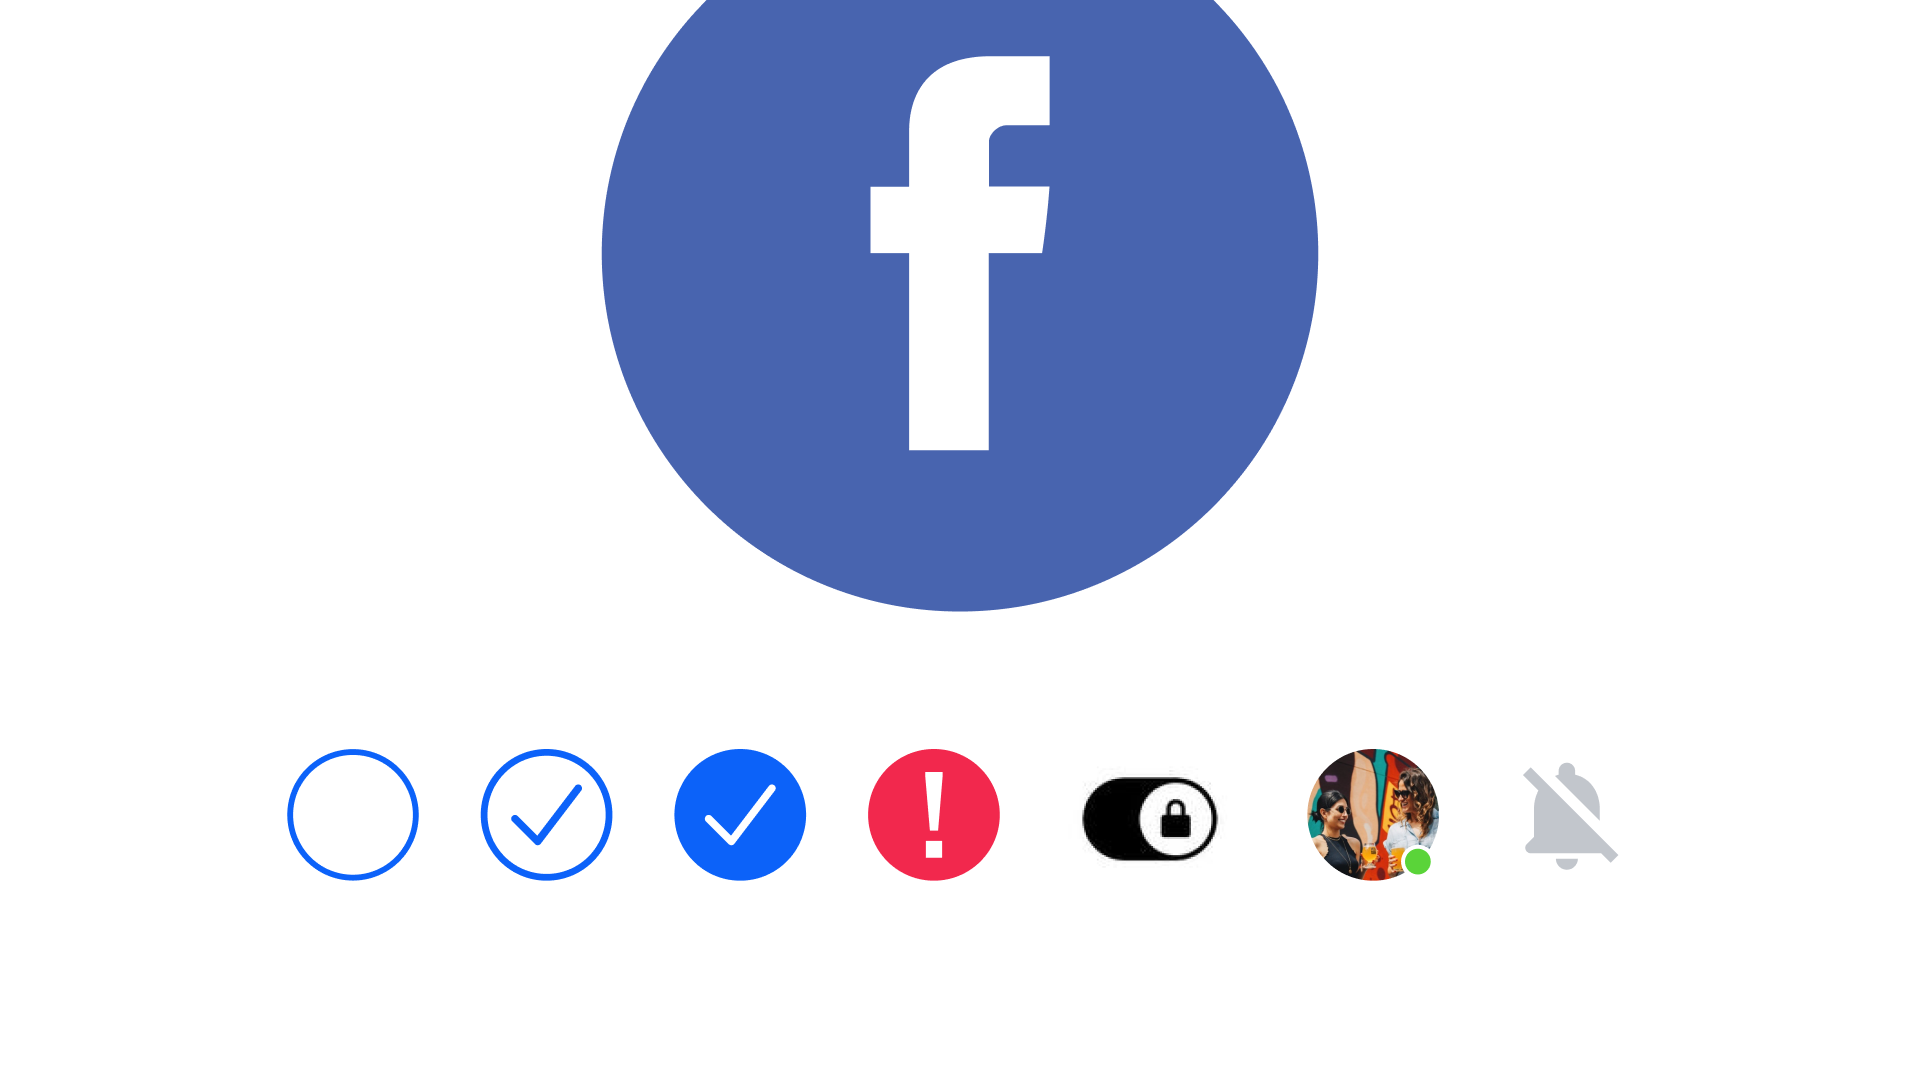 Facebook messenger symbols meaning